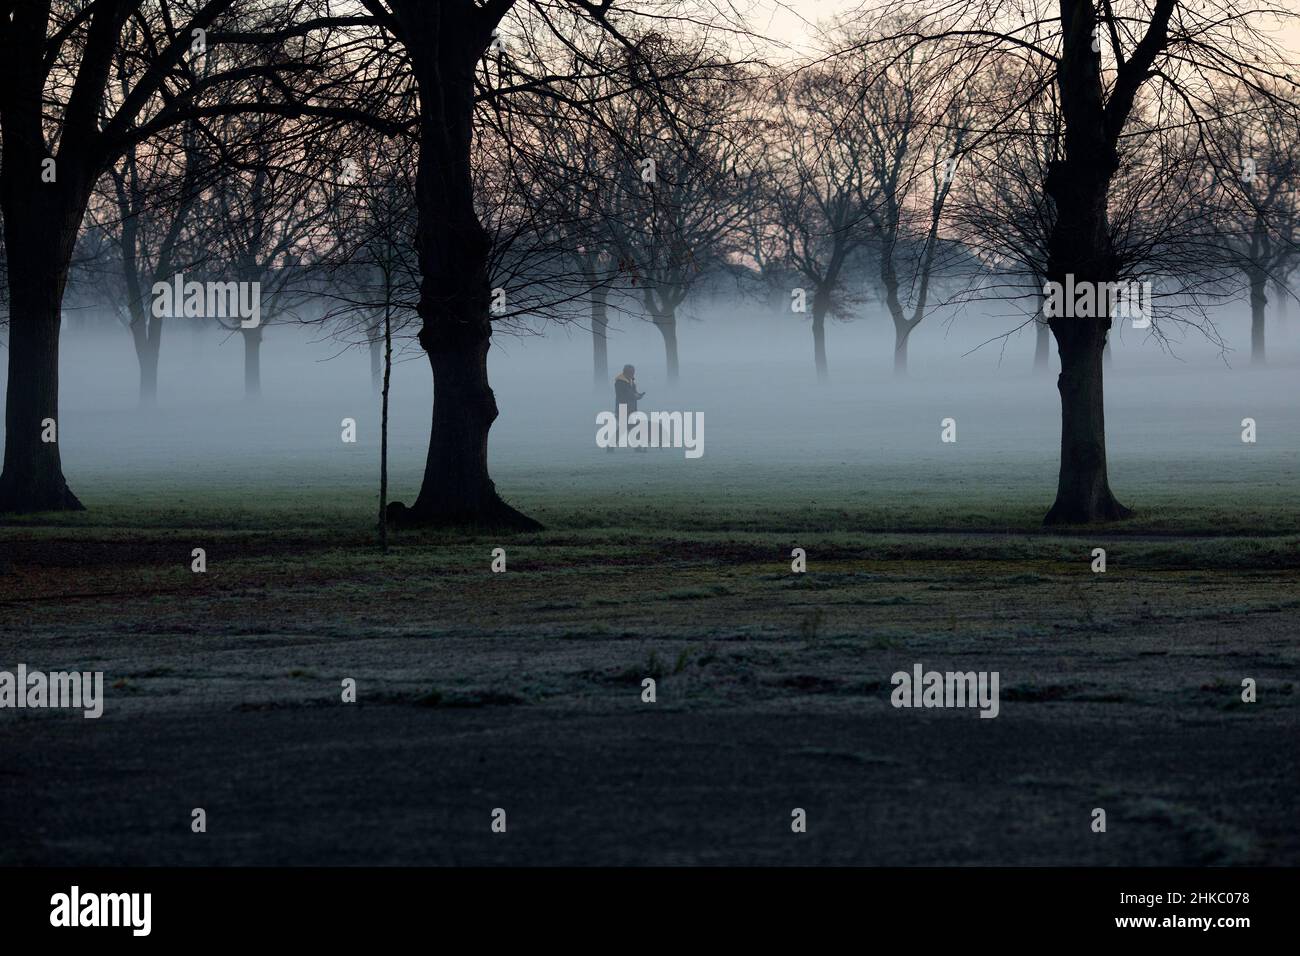 Les piétons marchent dans un parc couvert de brume à Ilford, dans l'est de Londres, le matin, car la température a chuté. Banque D'Images